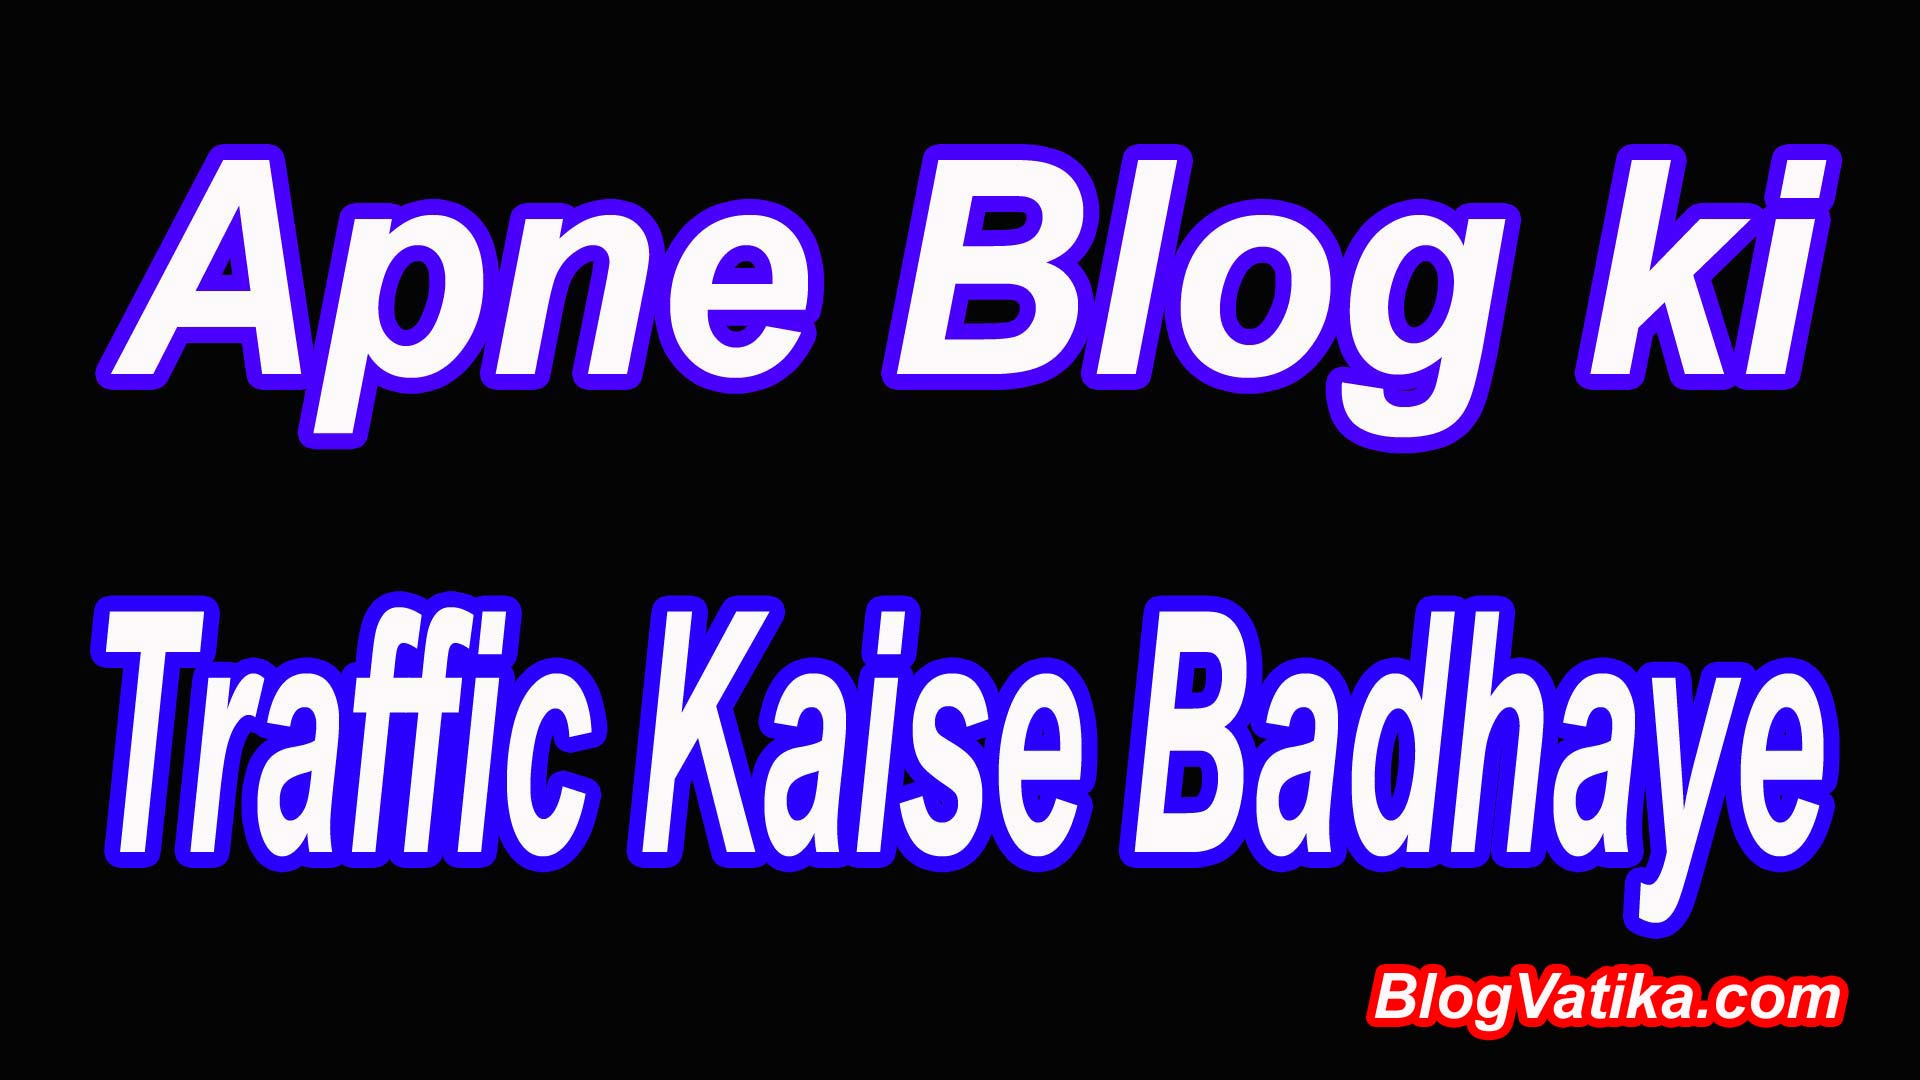 Apne blog ki traffic kaise badhaye Apni website ki traffic kaise badhaye